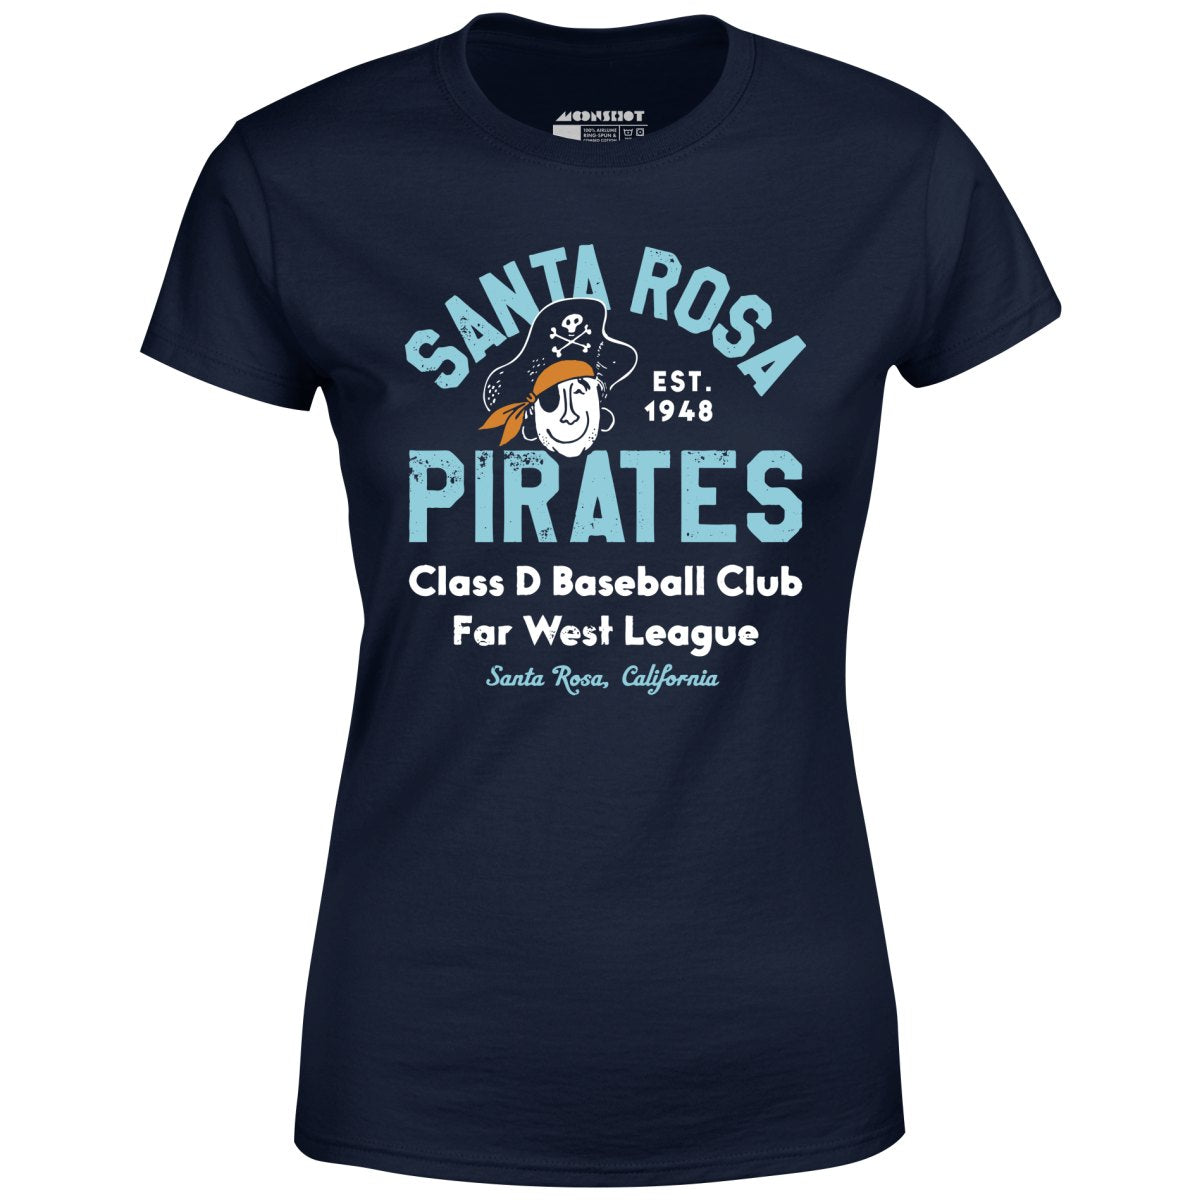 Santa Rosa Pirates - California - Vintage Defunct Baseball Teams - Women's T-Shirt